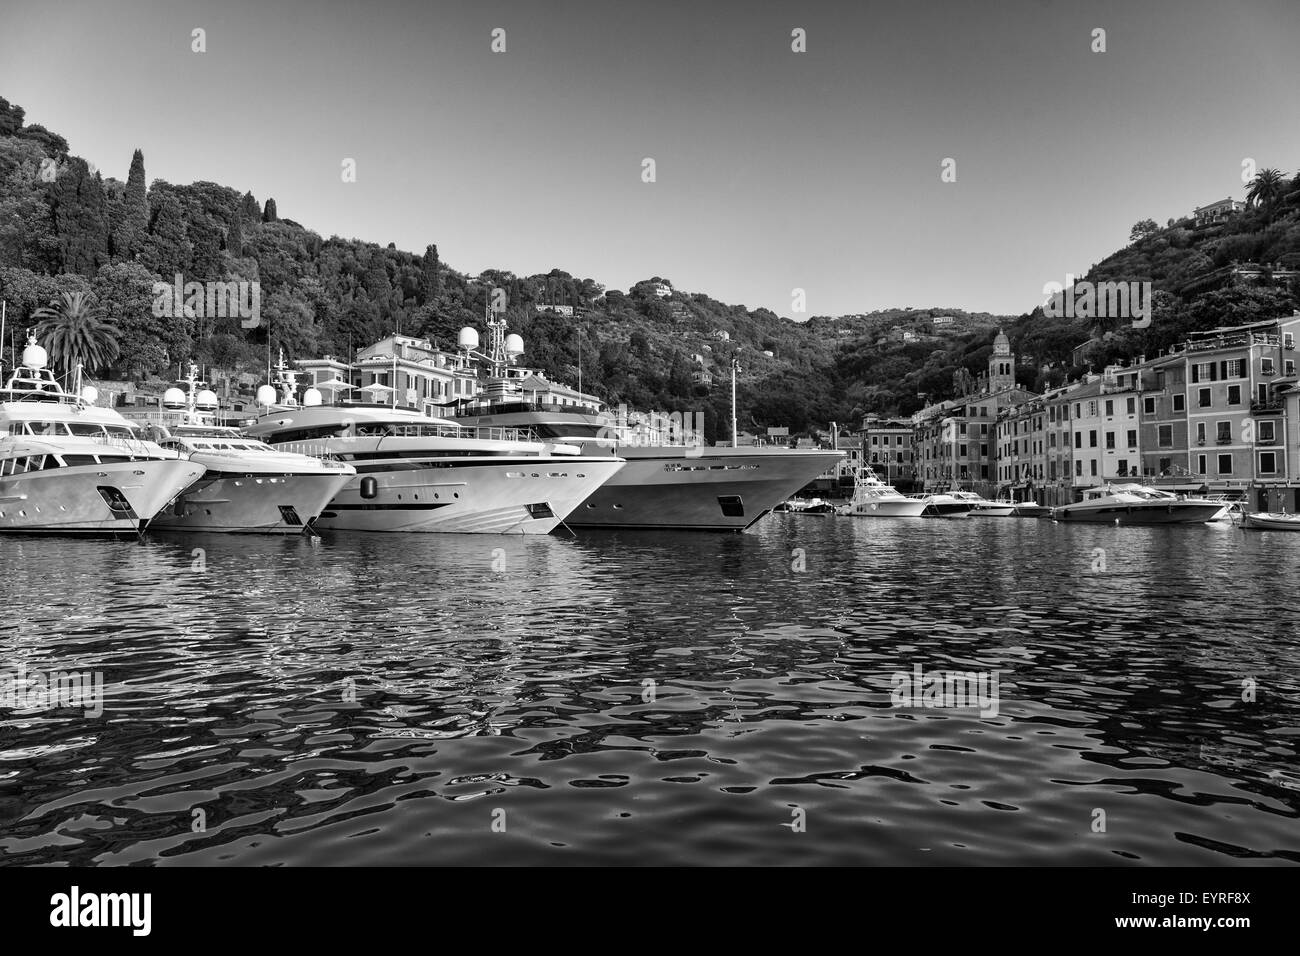 Luxury motor yachts amarrés dans le port abrité de Portofino sur la côte ligure de l'Italie, une station balnéaire populaire et touristique des Banque D'Images